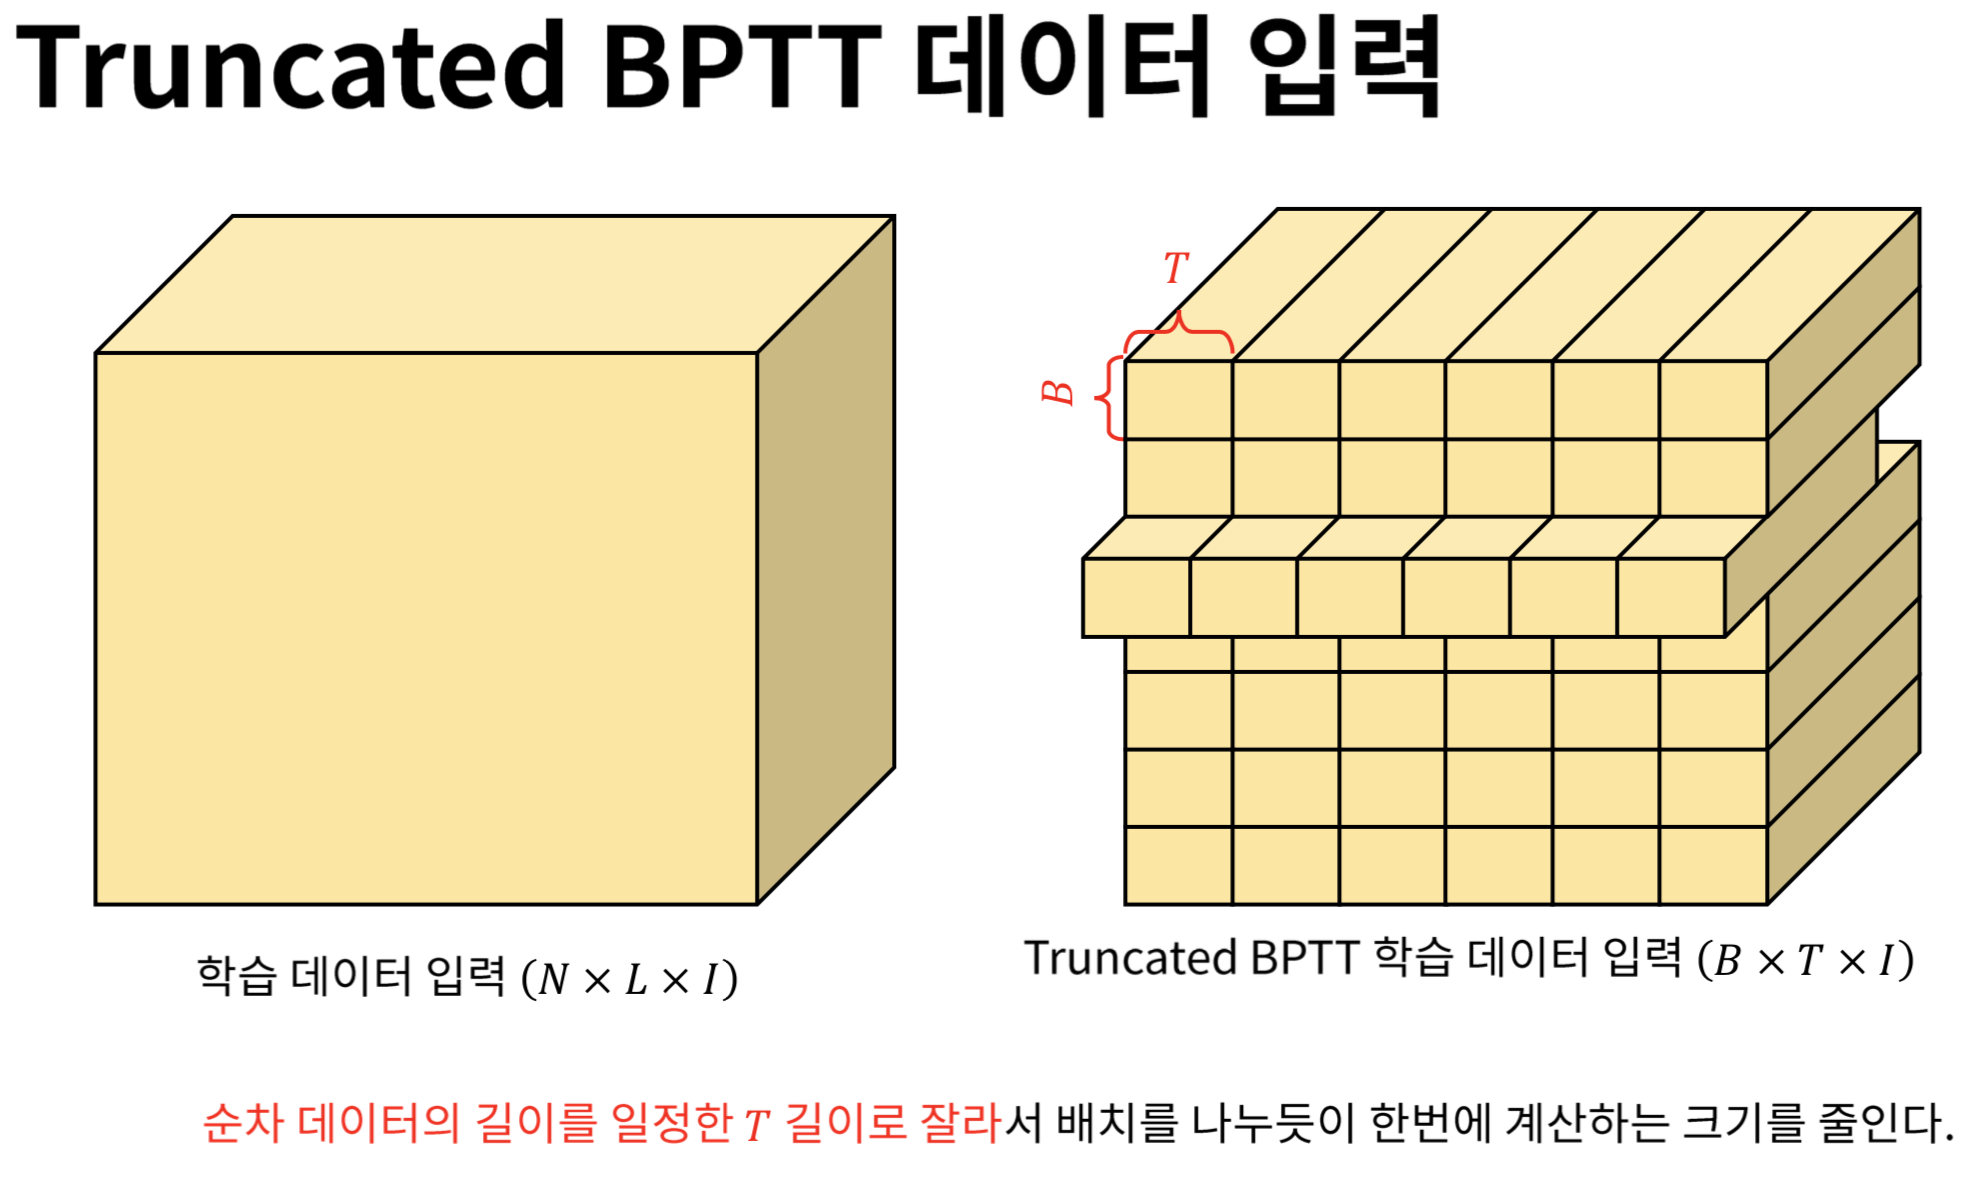 Truncated BPTT 데이터 입력